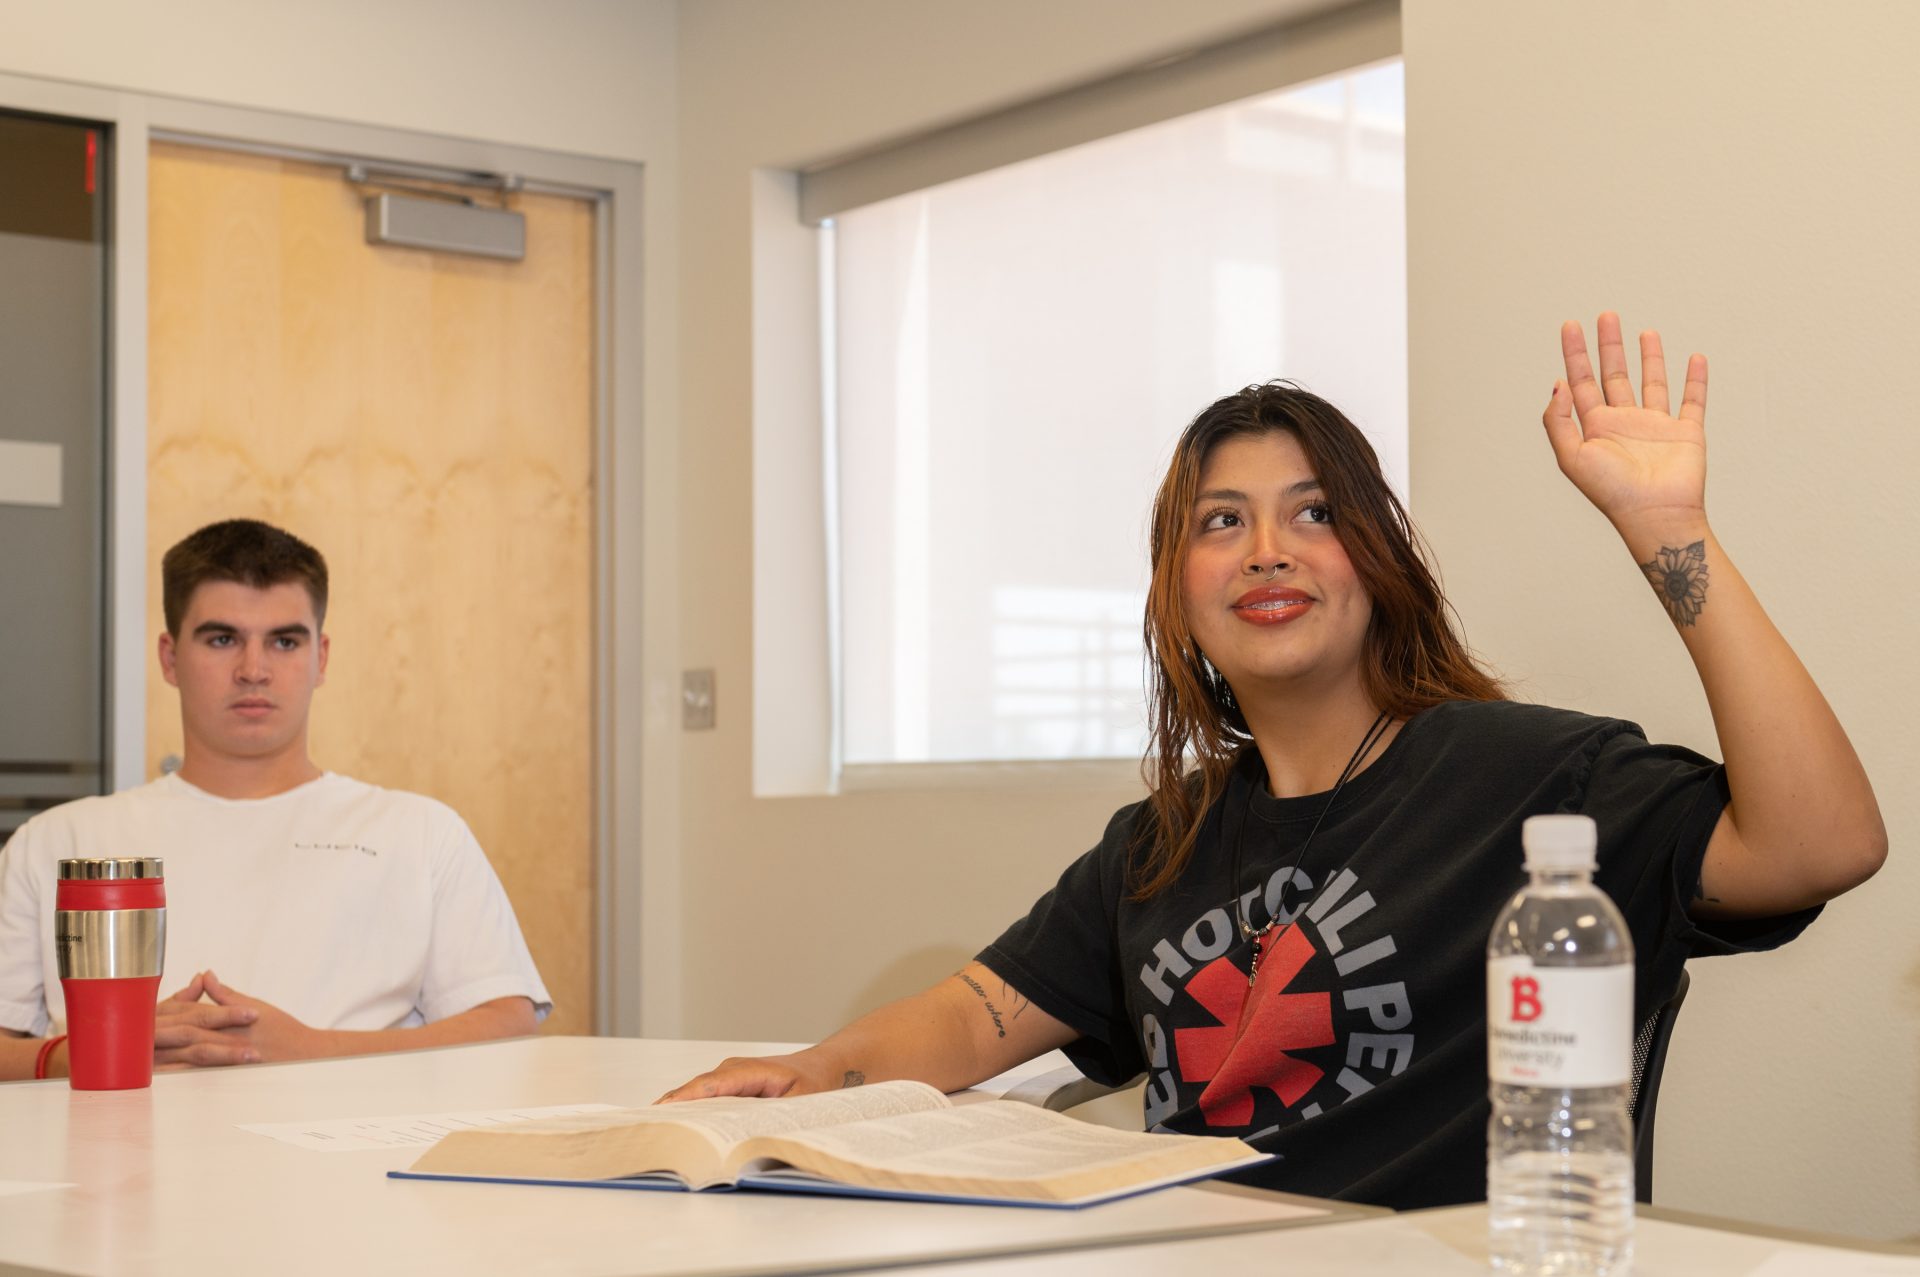 mesa, female student raising her hand in class